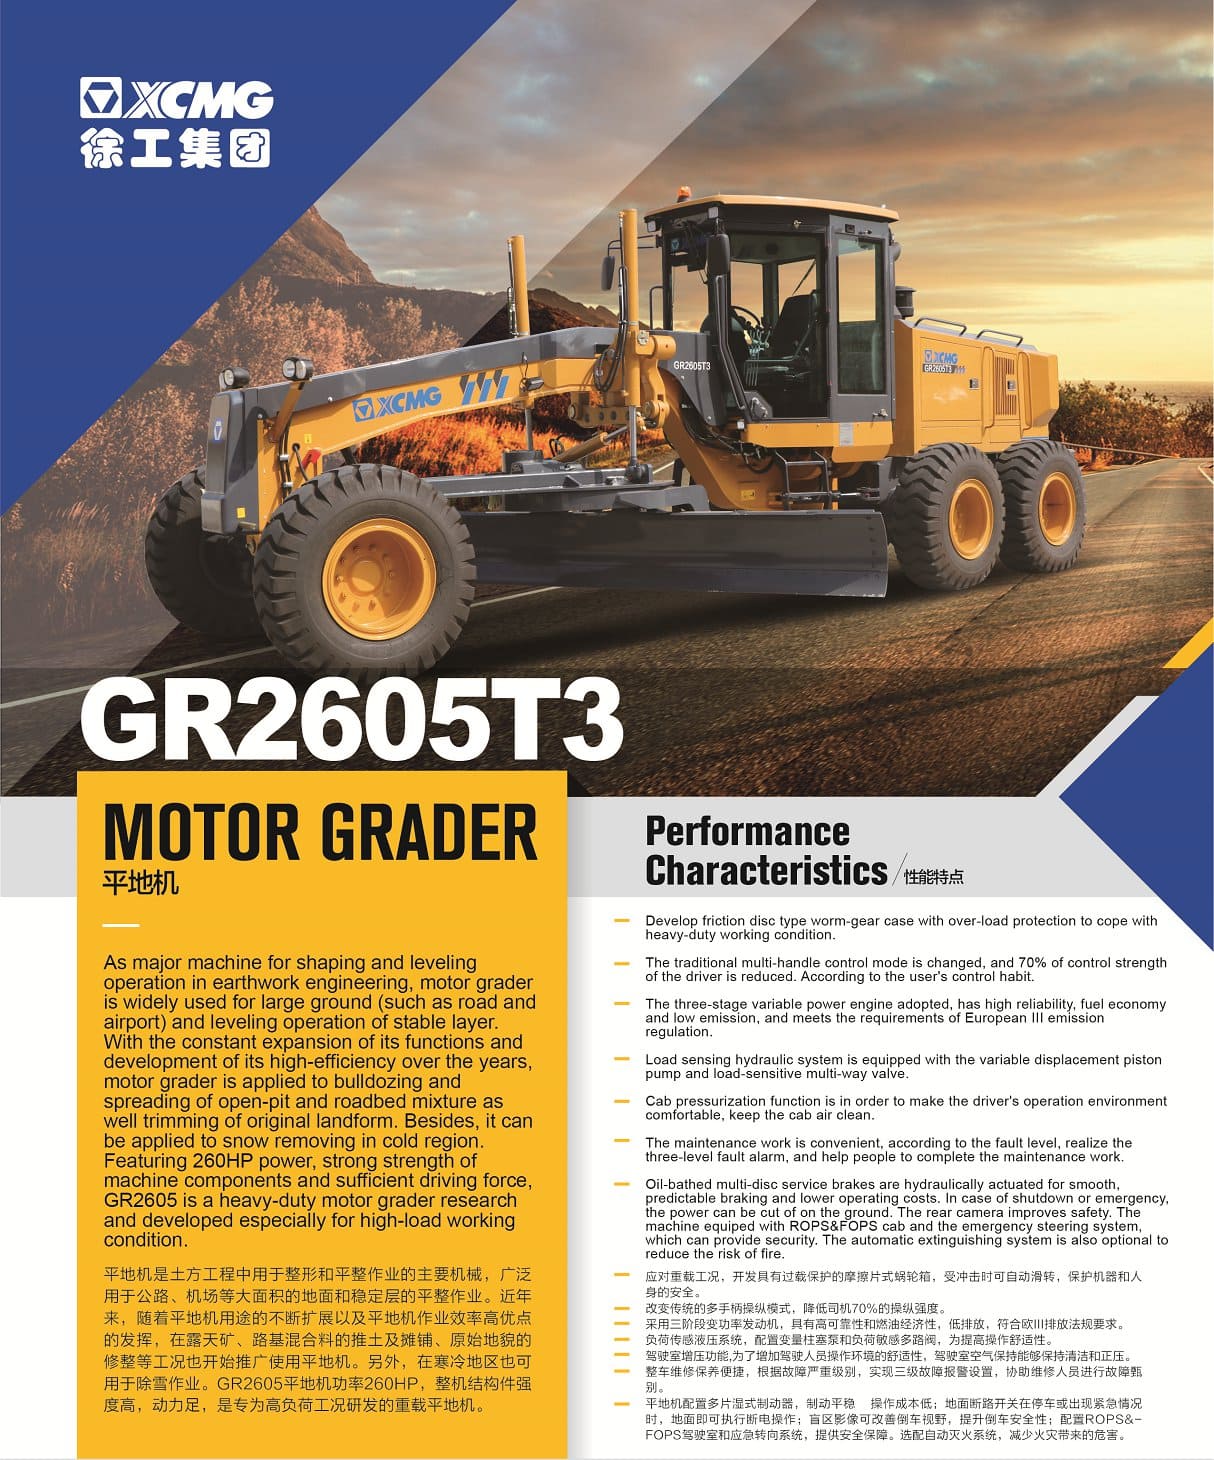 XCMG Official GR2605T3 Motor Grader for sale